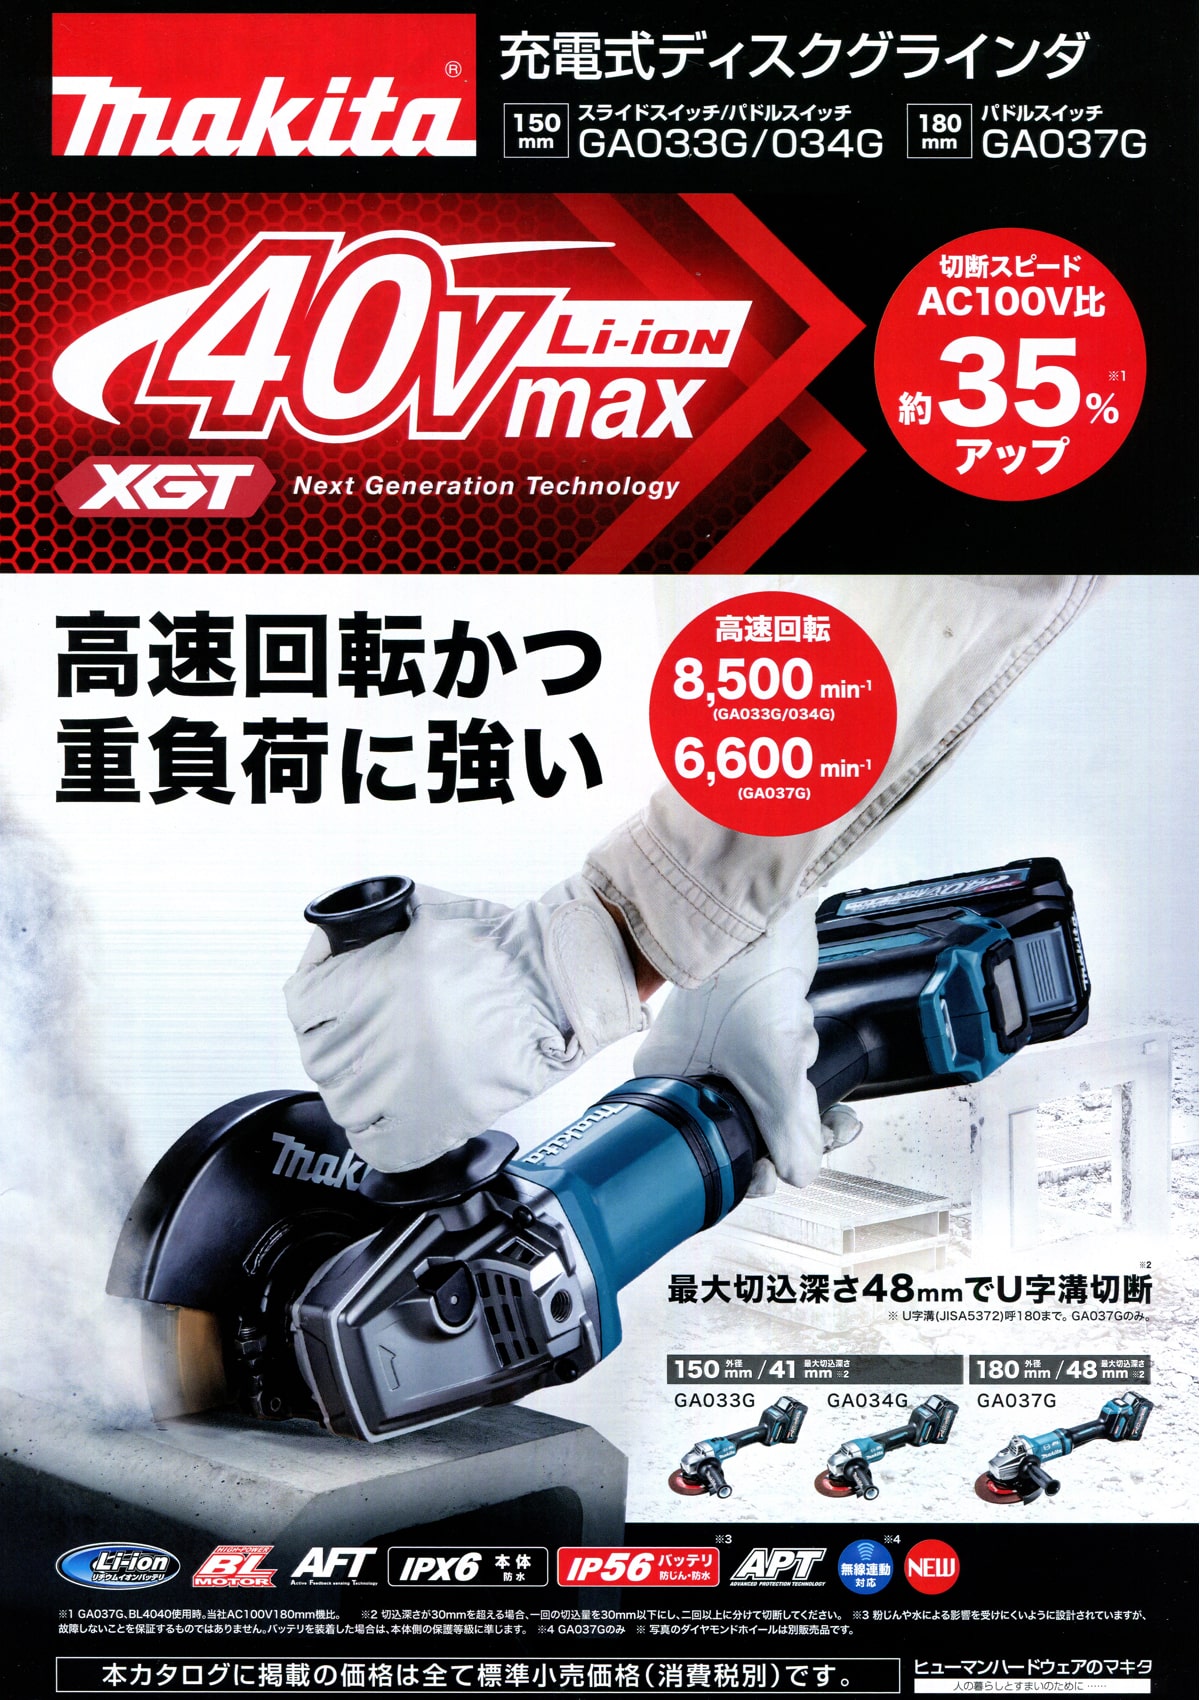 マキタ GA033GRMX 40Vmax充電式ディスクグラインダ 150mm ウエダ金物【公式サイト】